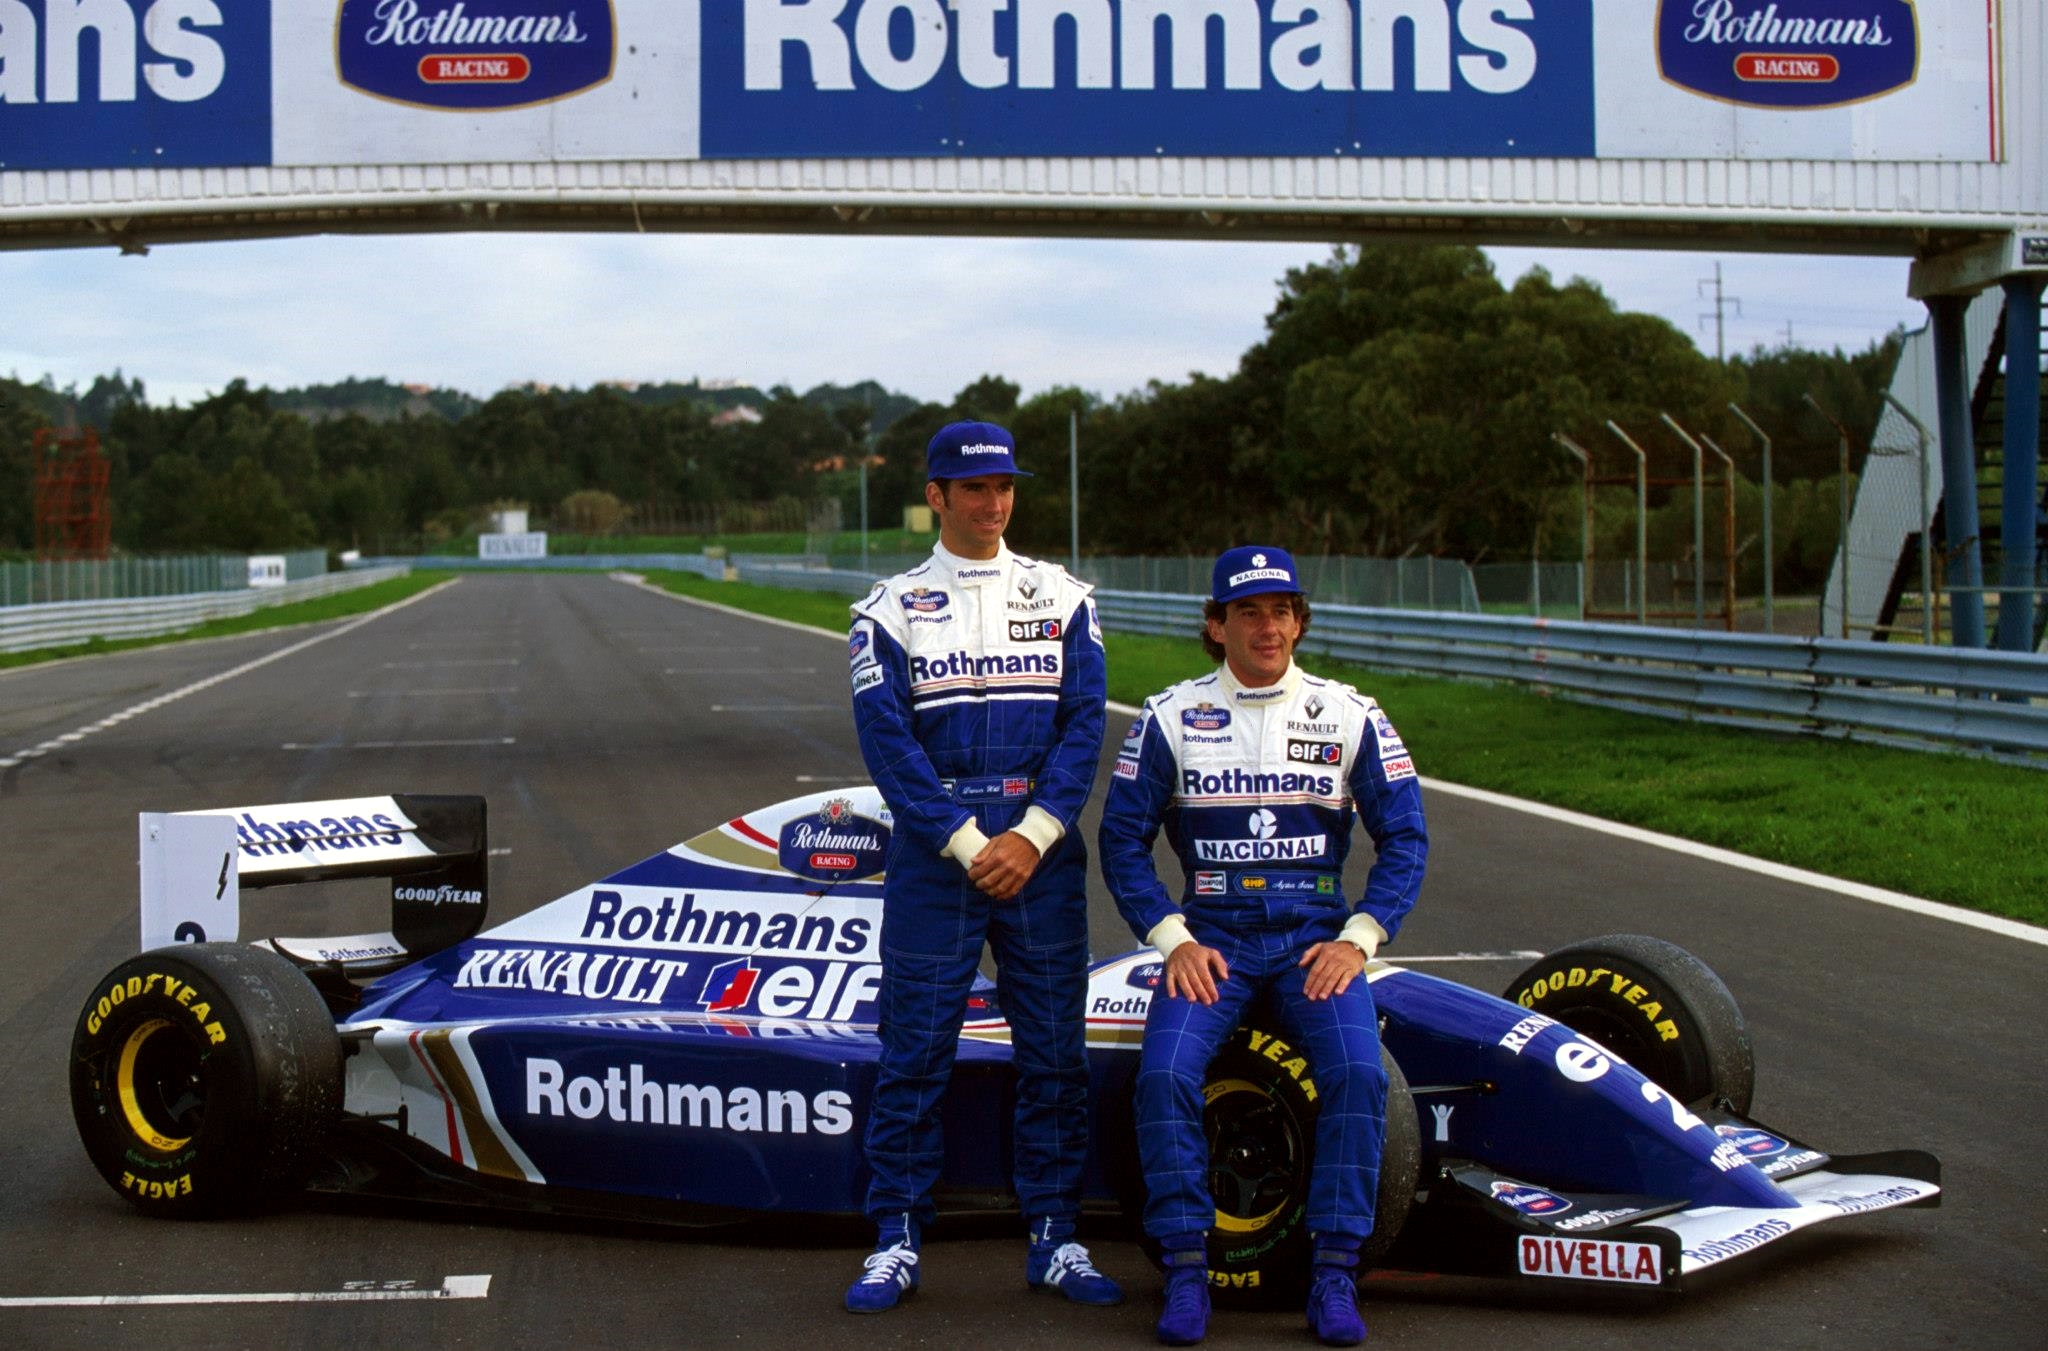 Temporada de Fórmula 1 em 1994, Ayrton Senna, piloto de Fórmula 1 - by reddit.com 